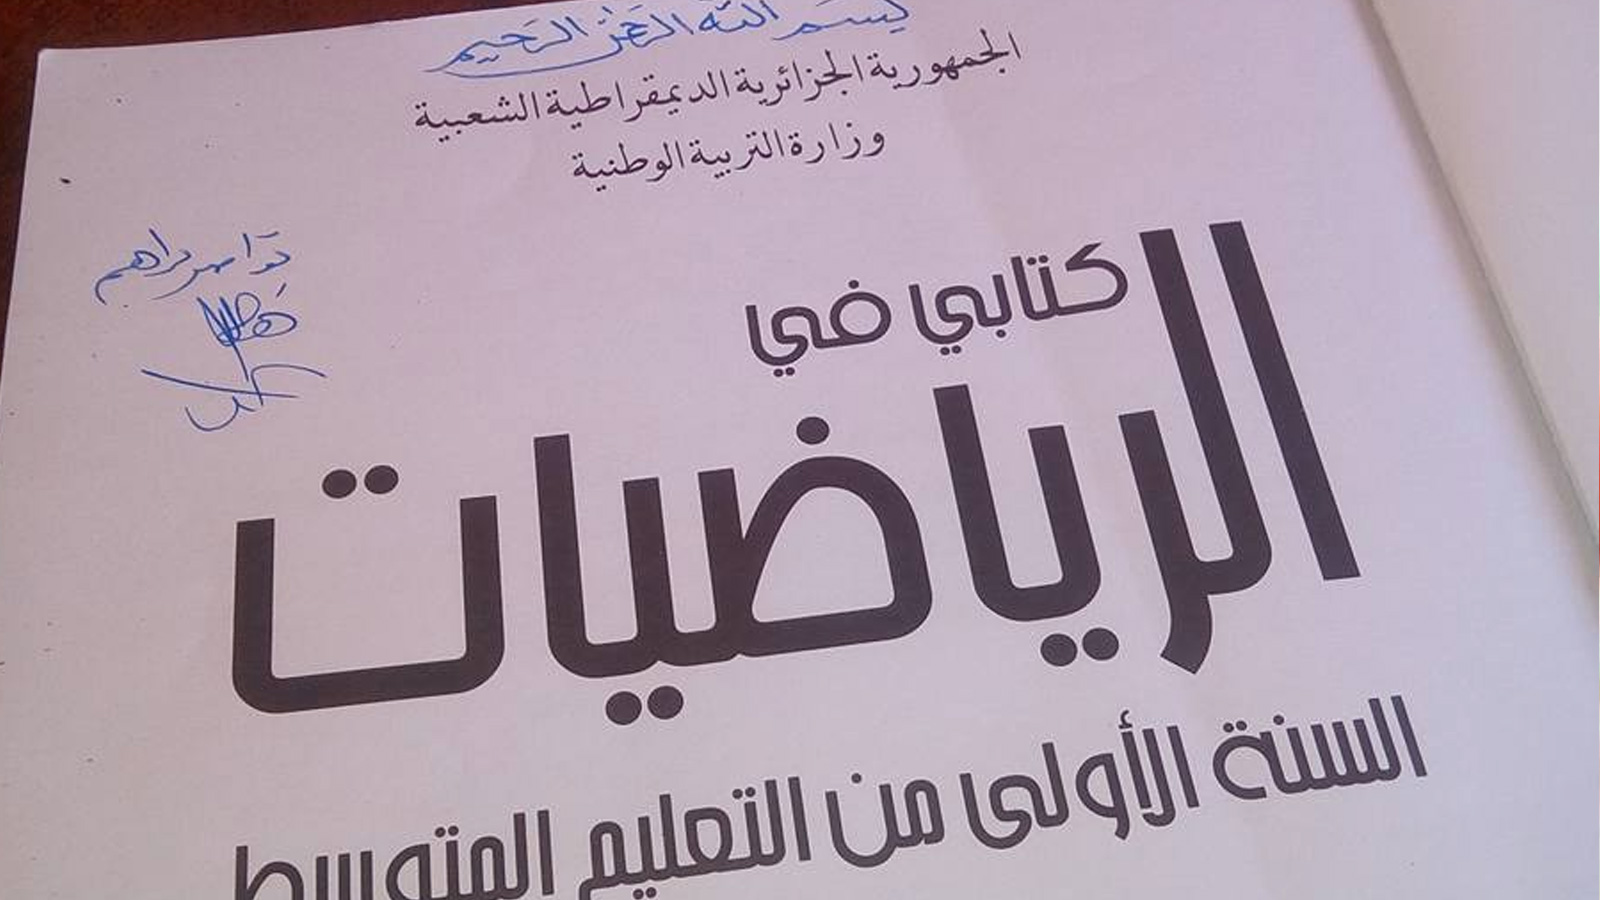 صور نشرها نشطاء تفاعلا مع حملة سنكتبها بأيدينا ردا على قرار وزيرة التربية بالجزائر حذف البسملة من الكتب المدرسية (مواقع التواصل الاجتماعي)